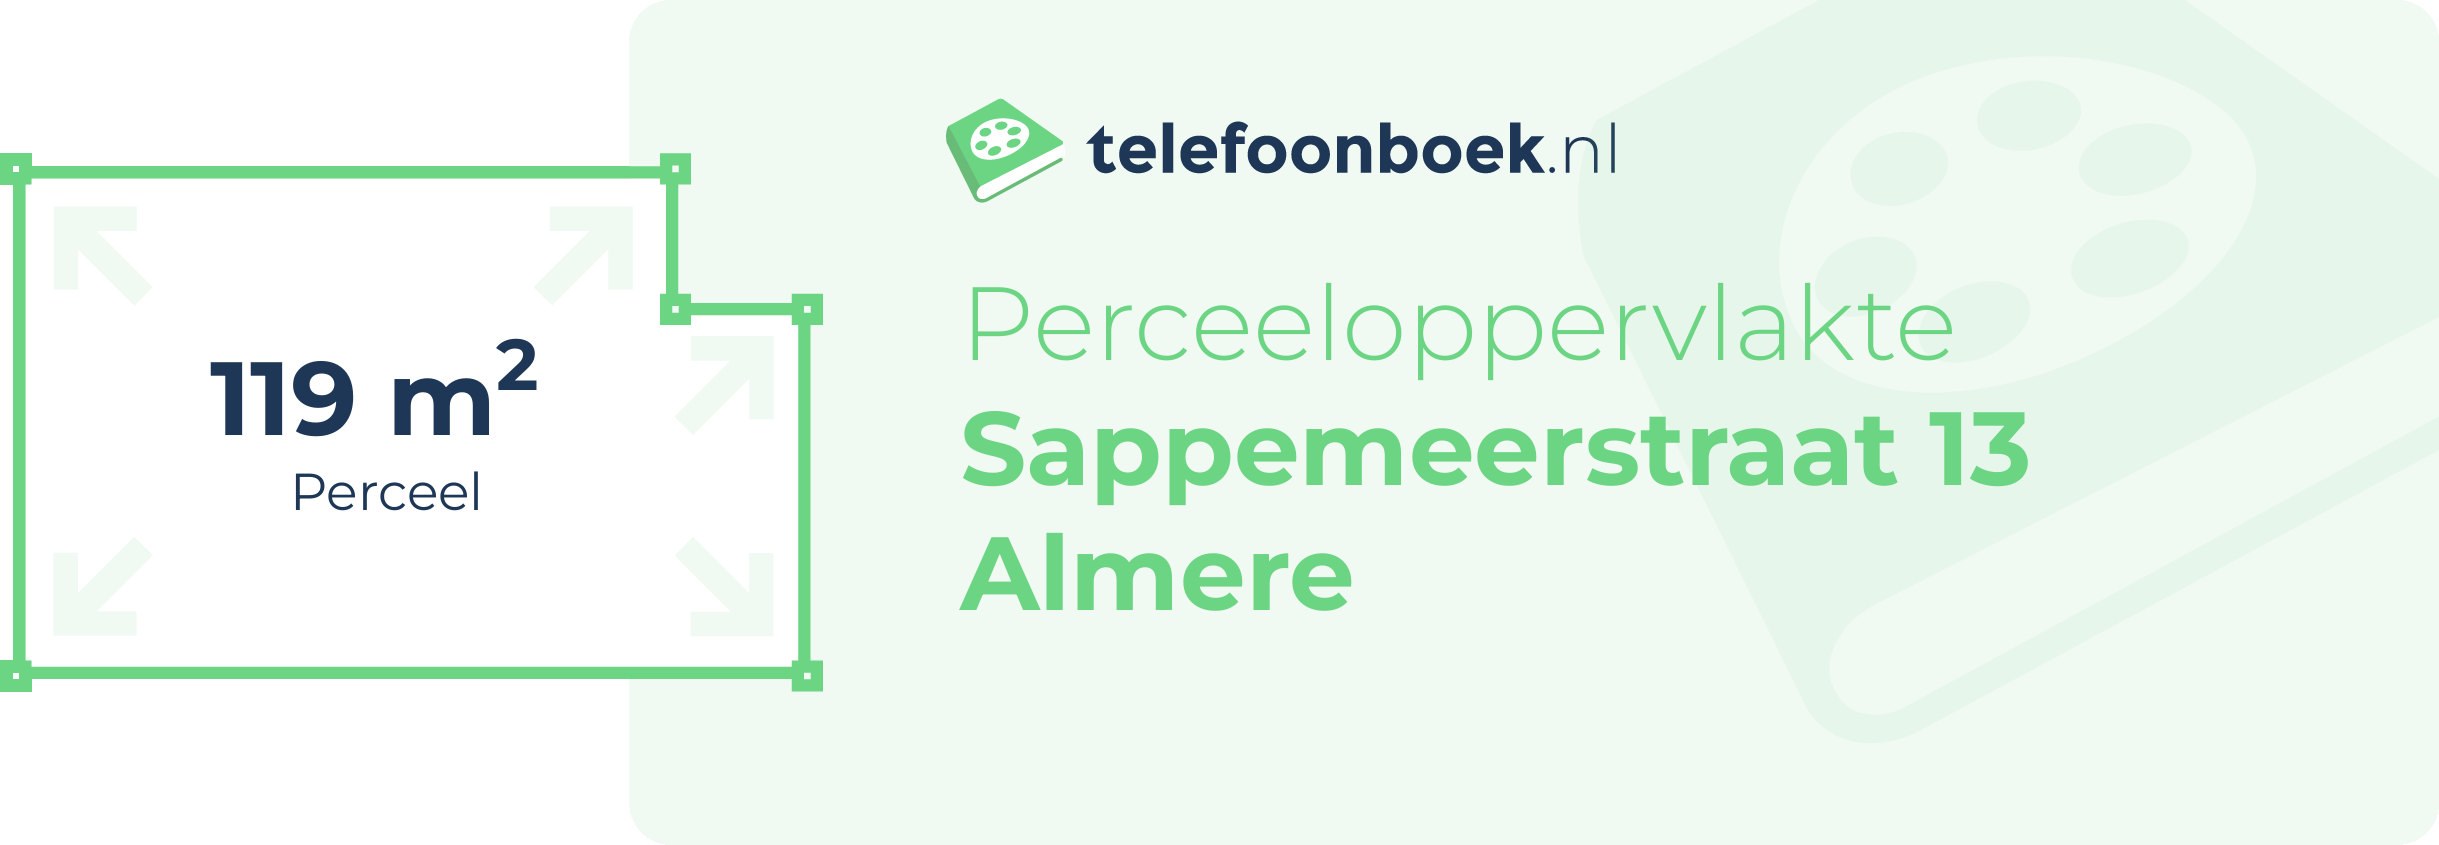 Perceeloppervlakte Sappemeerstraat 13 Almere